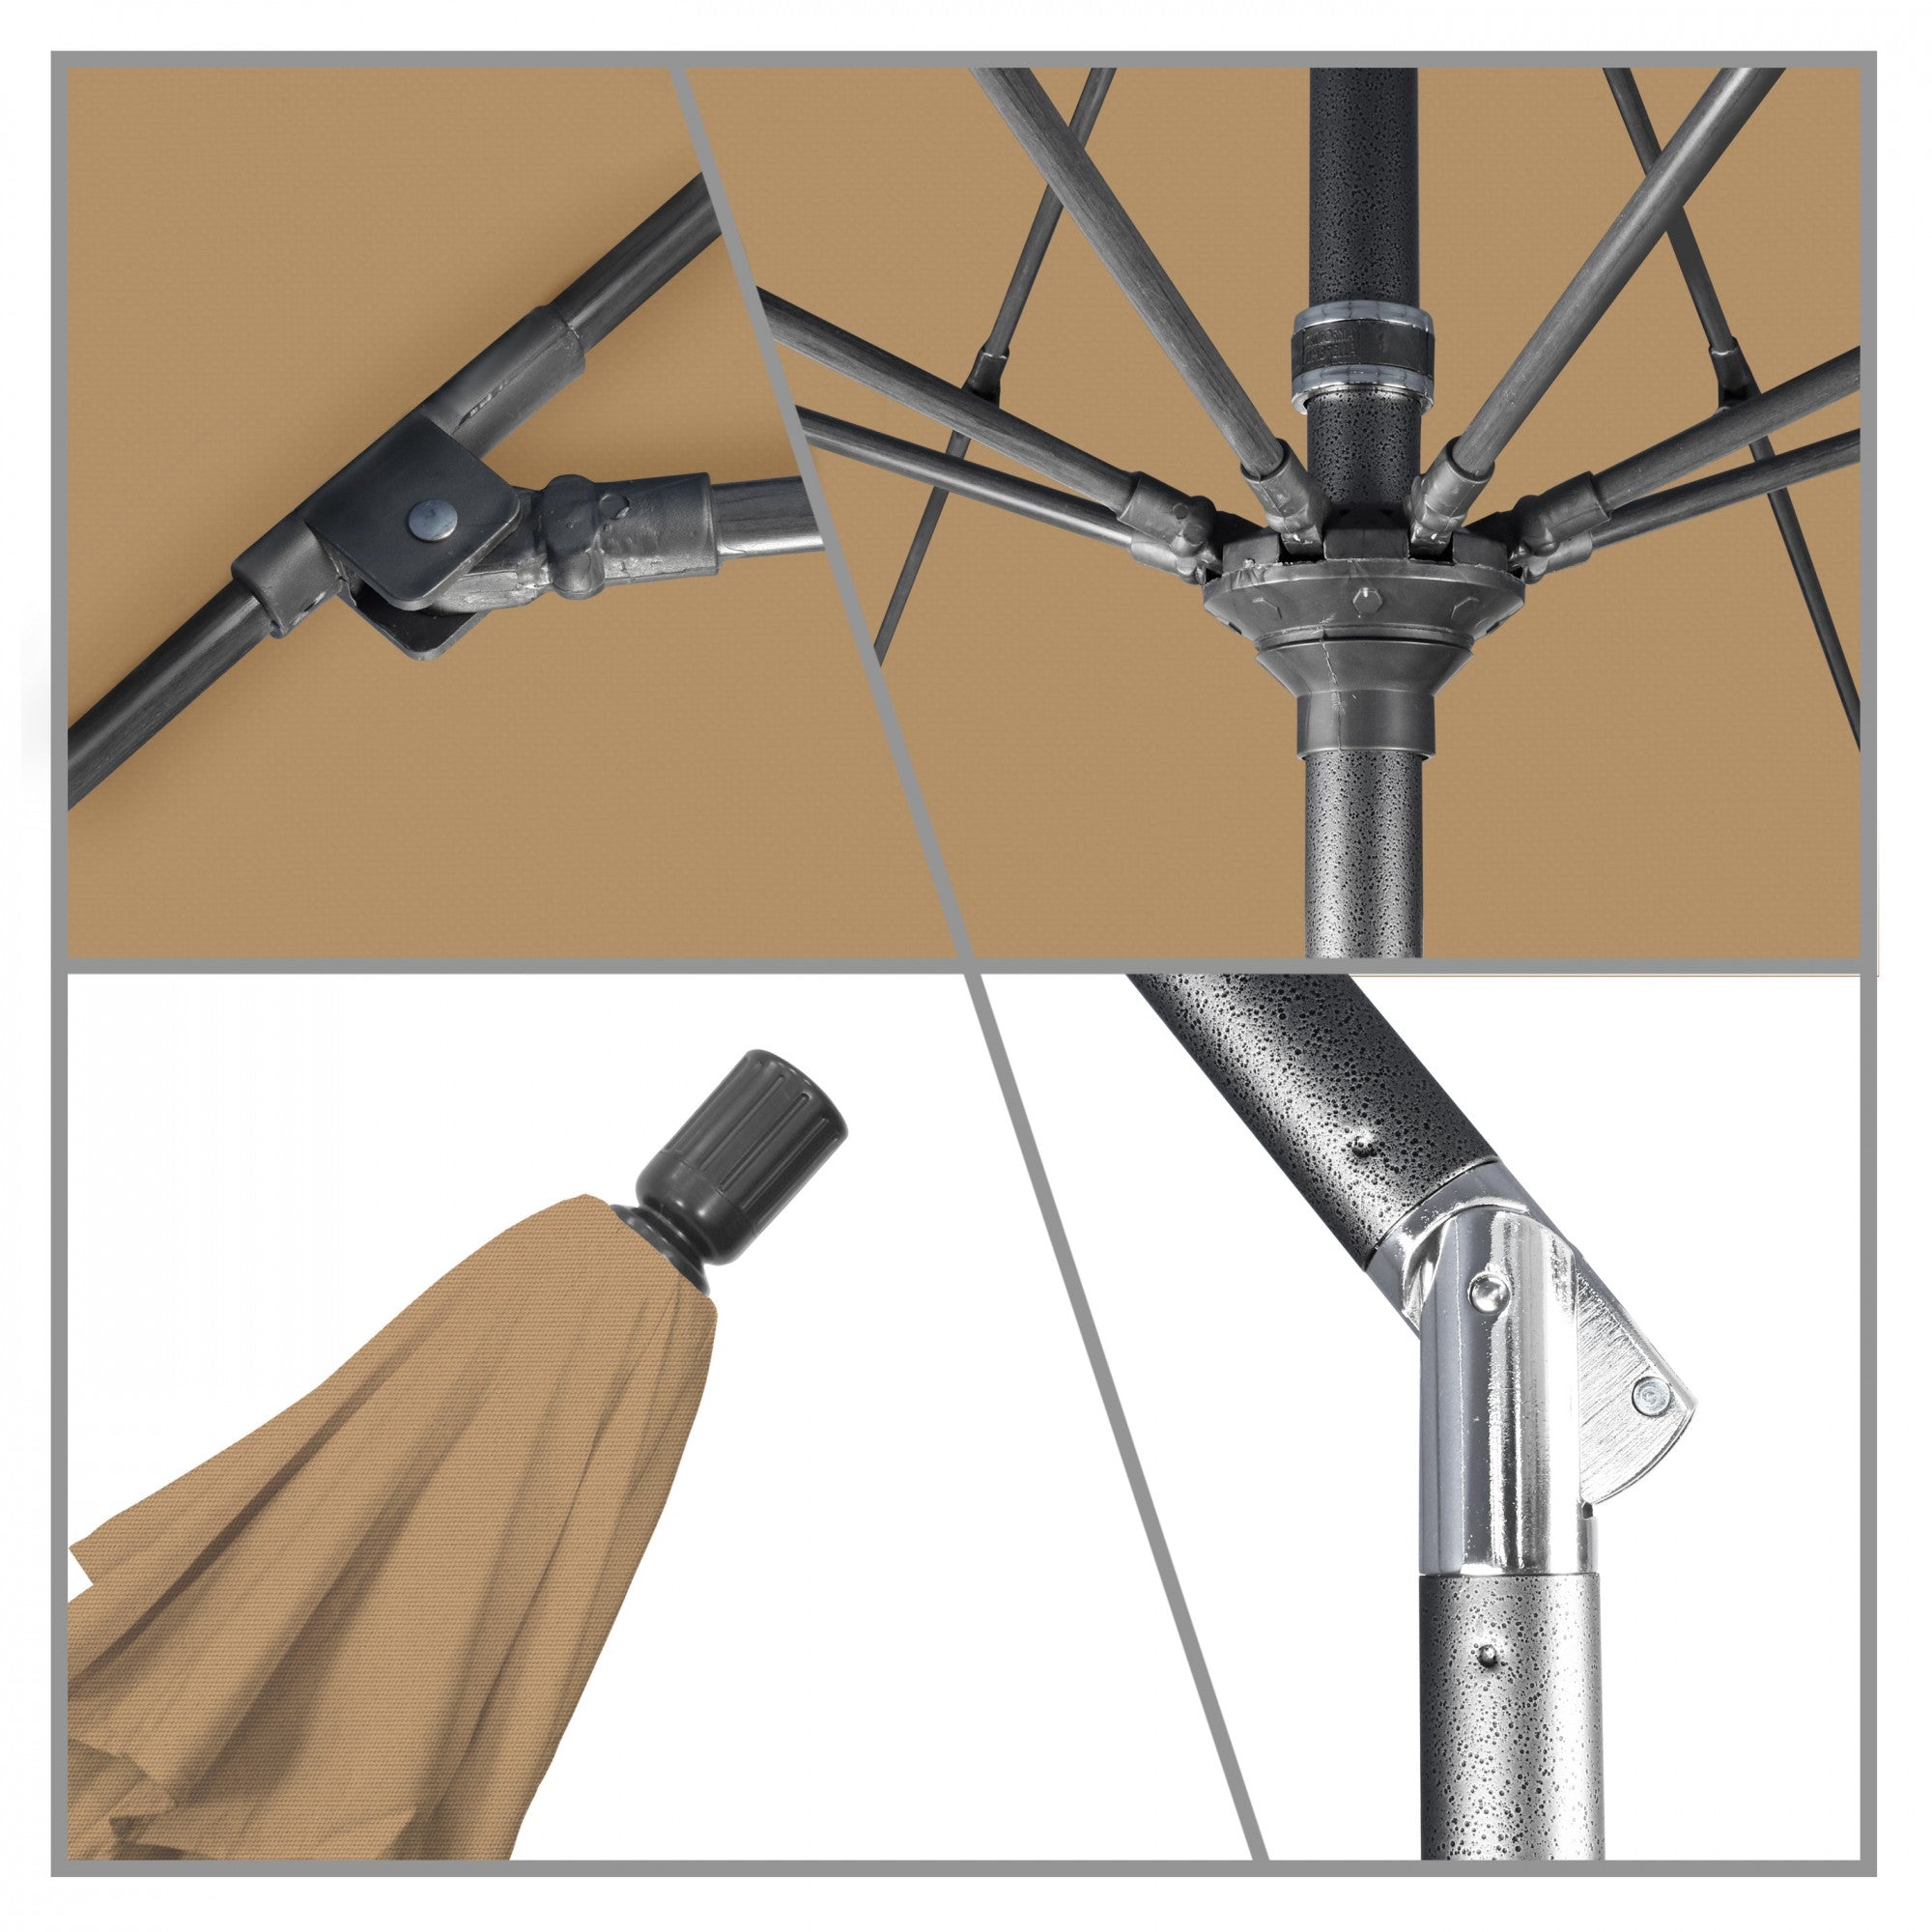 California Umbrella - 9' - Patio Umbrella Umbrella - Aluminum Pole - Champagne - Olefin - GSCUF908010-F67